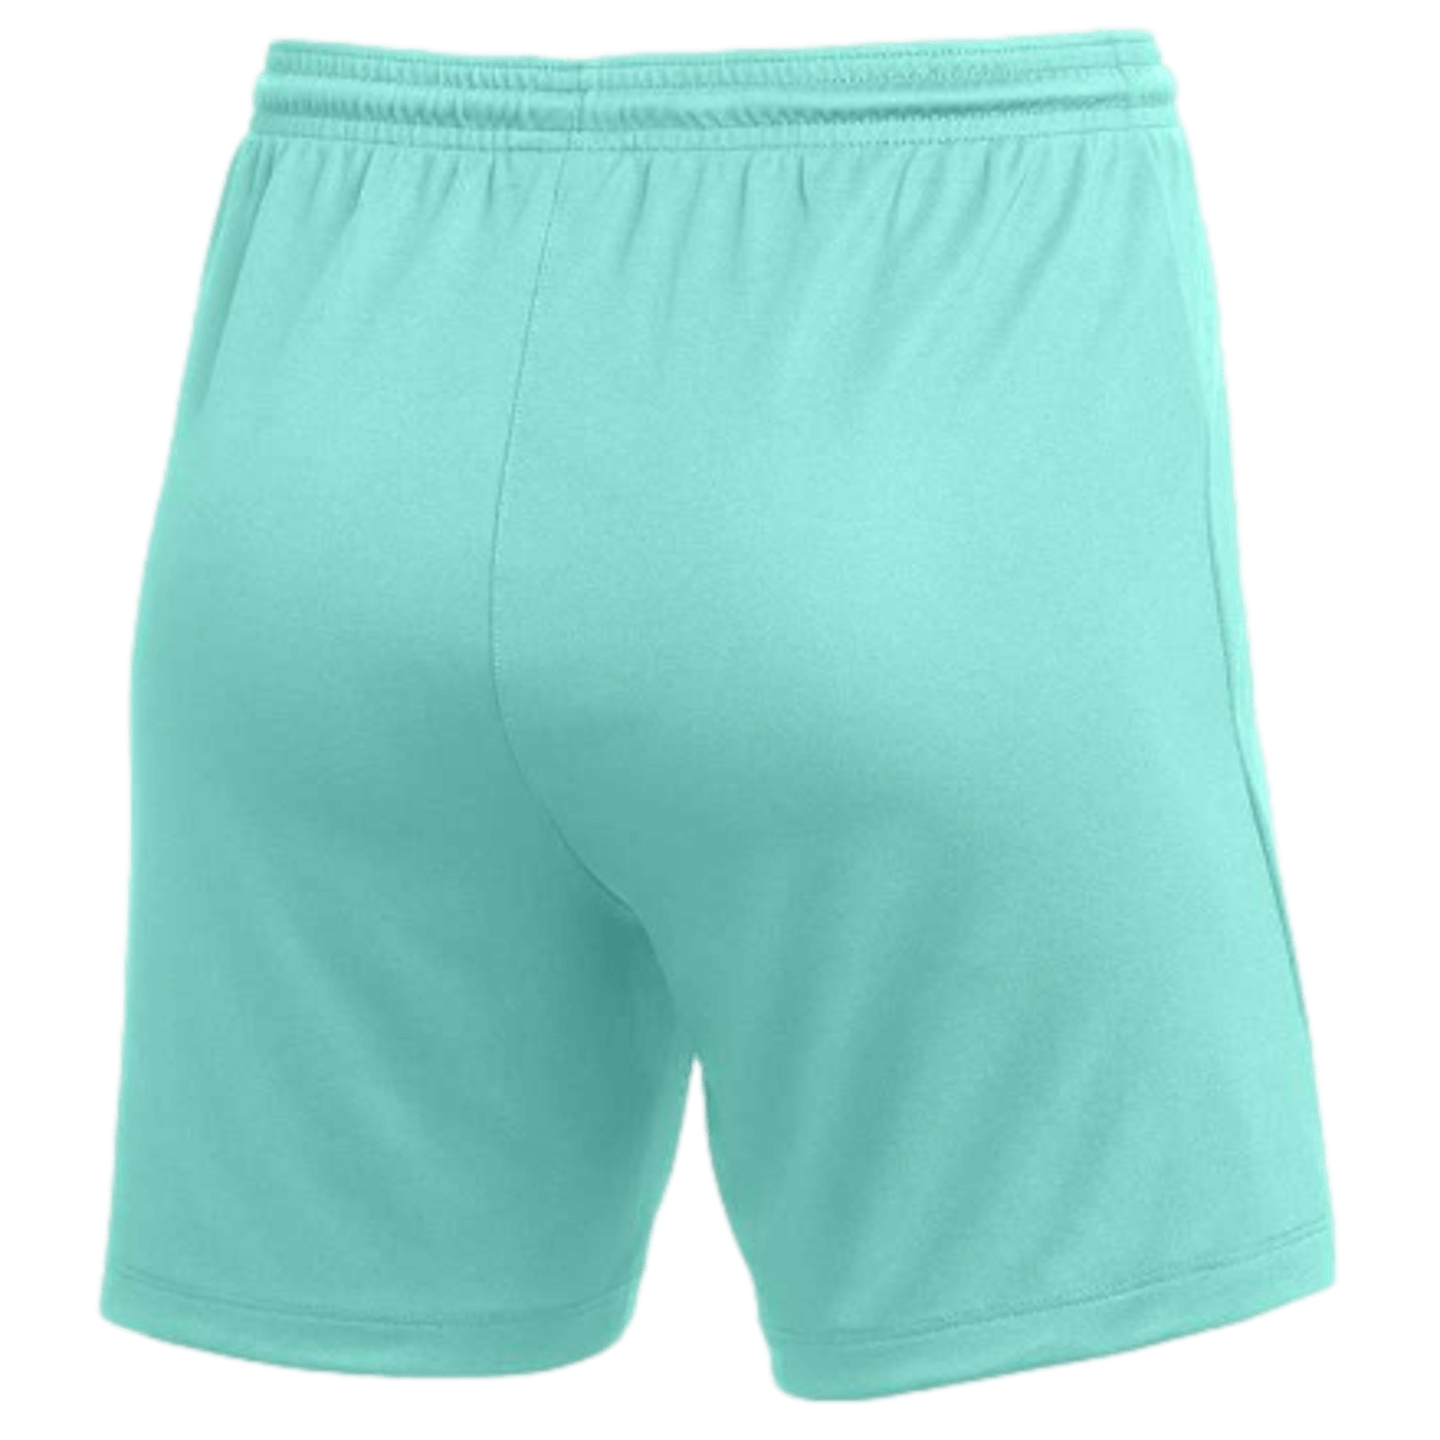 Pantalón corto Nike Dri-Fit Park III para mujer